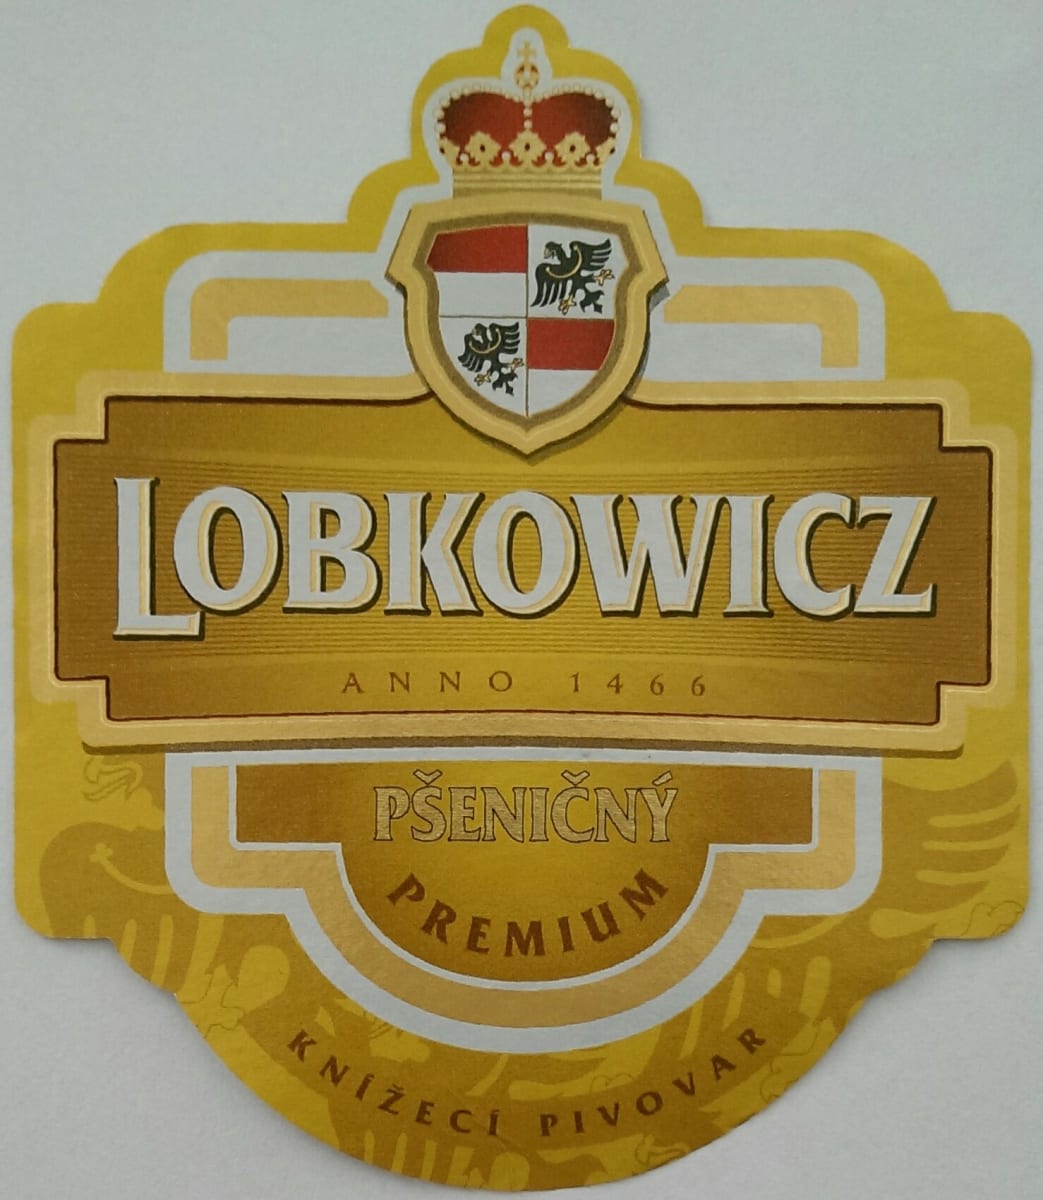 Lobkowicz Pšeničný Premium